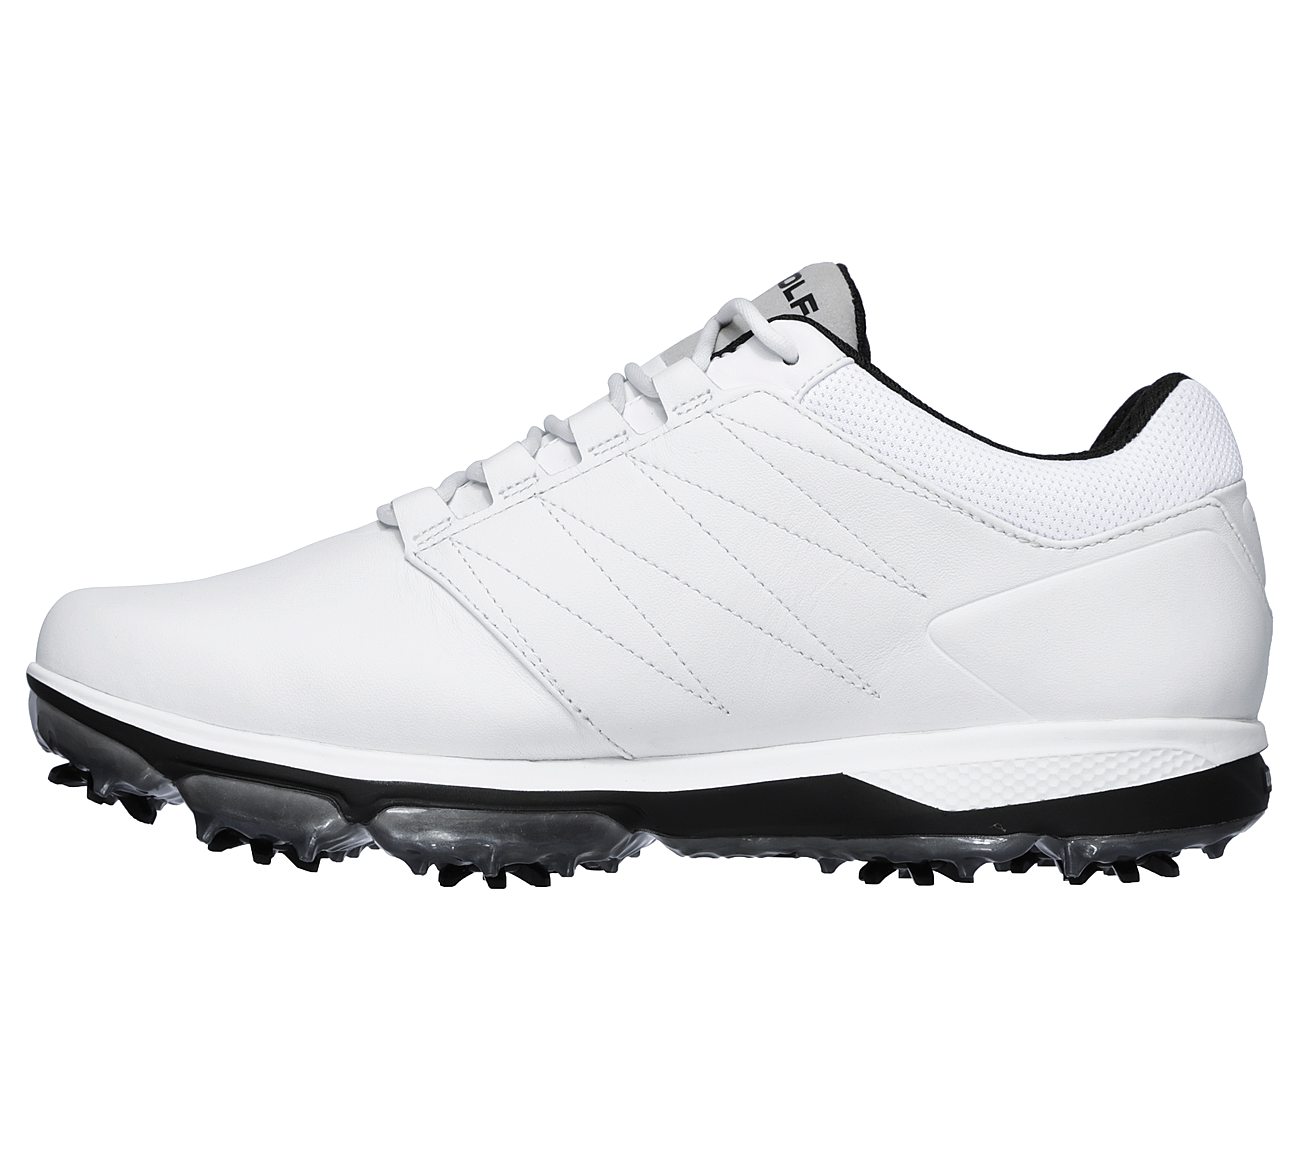 skechers go golf pro men's golf shoe white